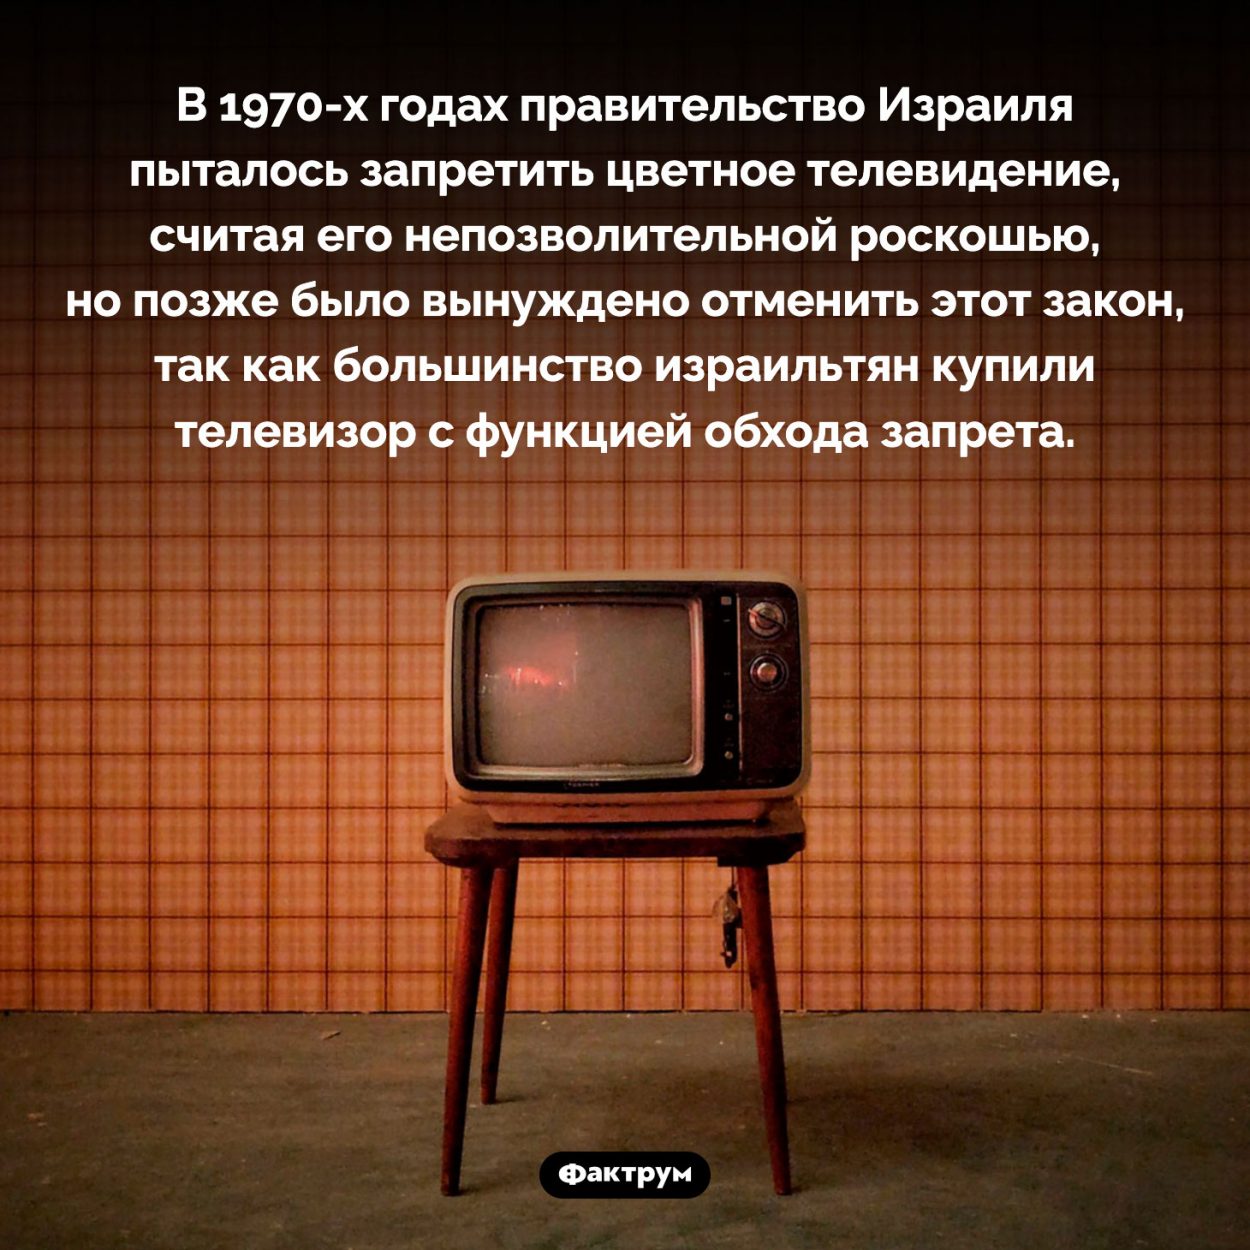 В Израиле было запрещено цветное телевидение. В 1970-х годах правительство Израиля пыталось запретить цветное телевидение, считая его непозволительной роскошью, но позже было вынуждено отменить этот закон, так как большинство израильтян купили телевизор с функцией обхода запрета.